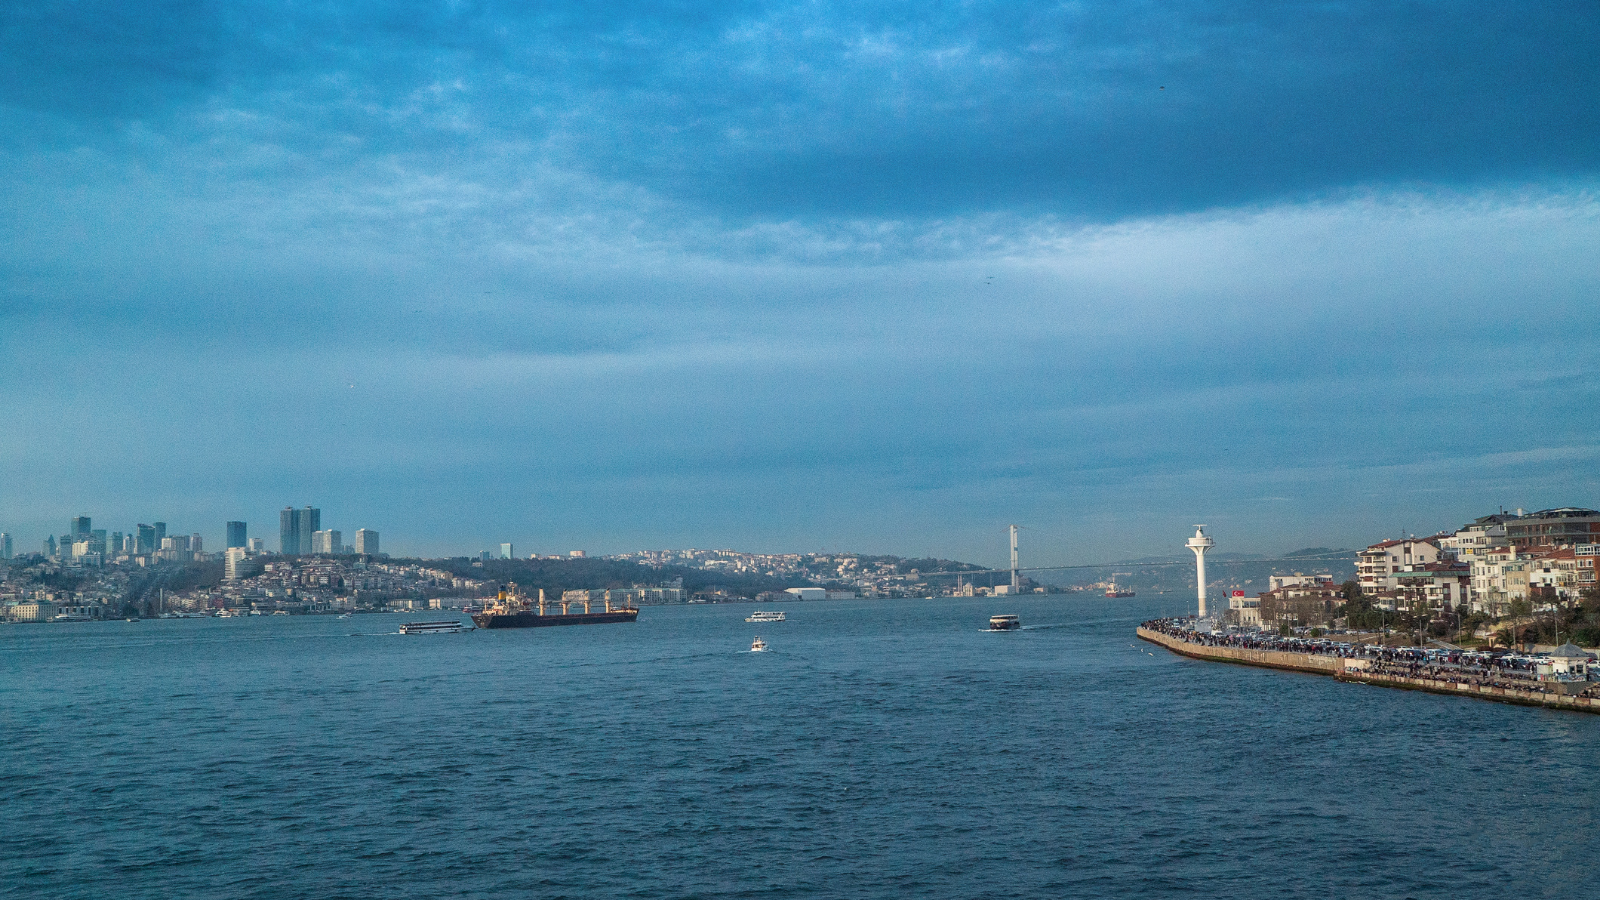 Blick auf die Asien und Europa verbindende Bosporus-Brücke in Istanbul